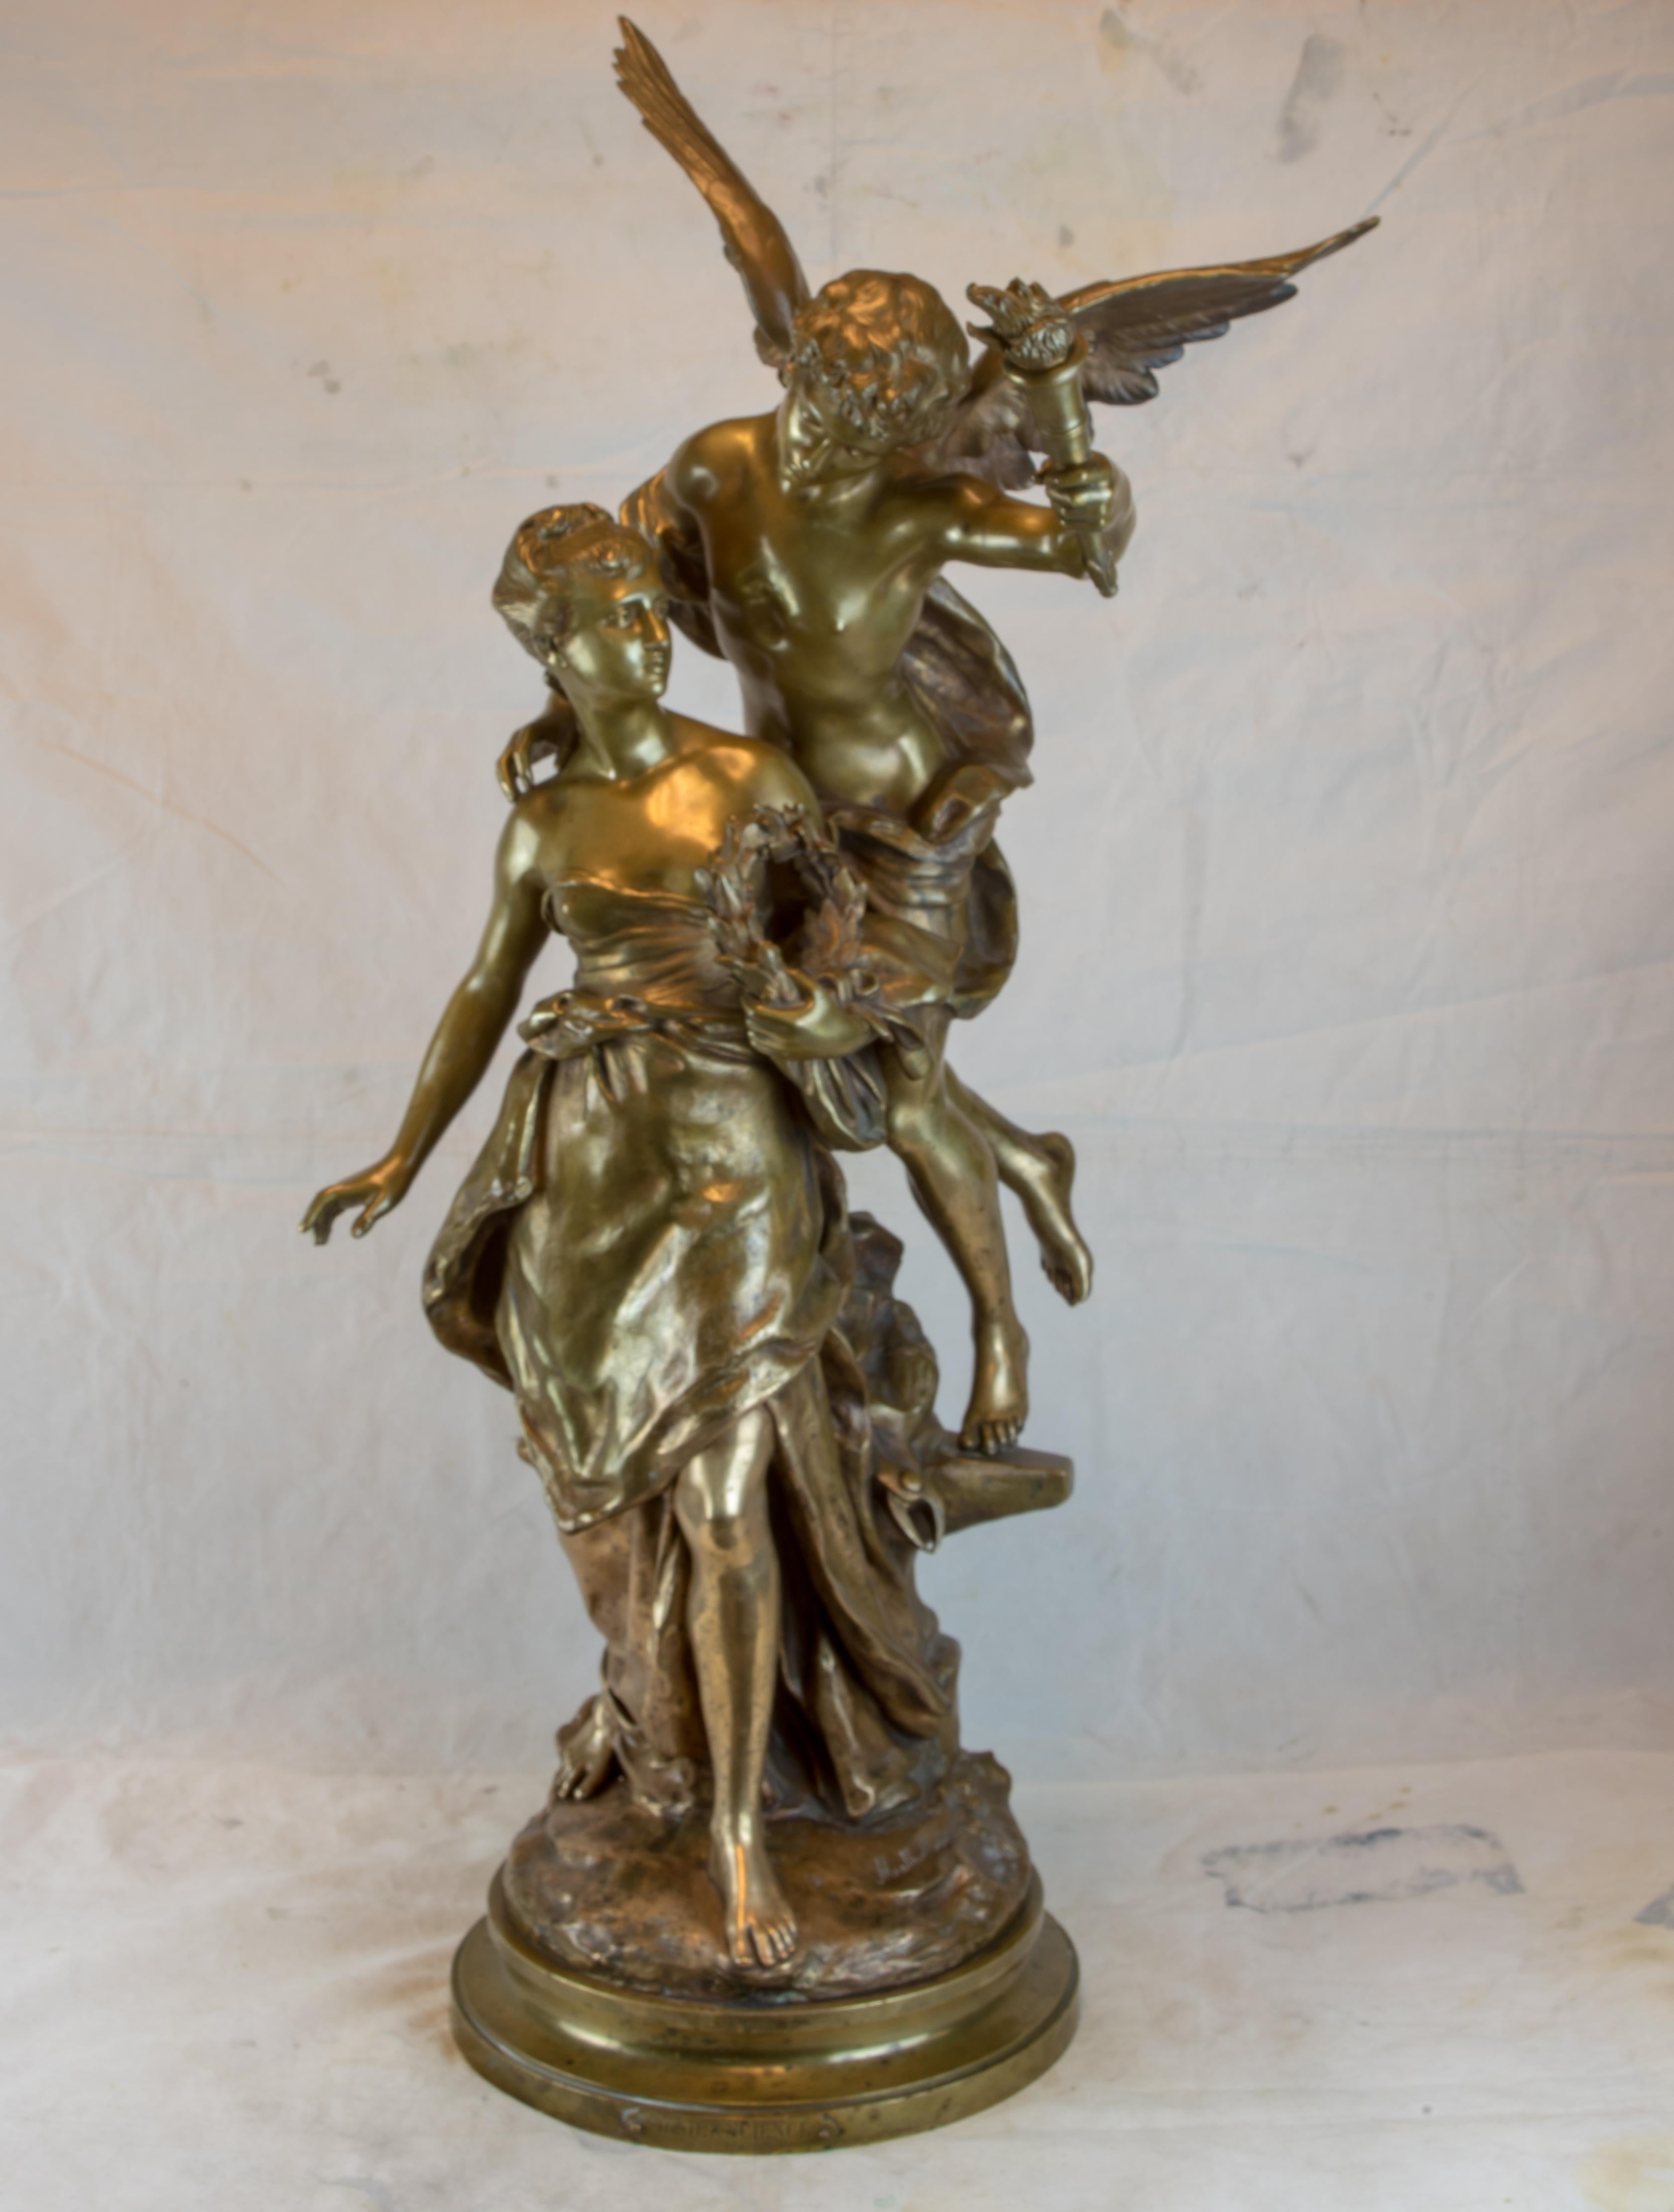 Bronzenes Figurenensemble einer Génie und der Wissenschaft, einer Frau, die von einem Engel mit ausgebreiteten Flügeln geführt wird, von Mathurin Moreau, einem gefeierten und ausgezeichneten französischen Bildhauer, dessen Talente vor allem in der